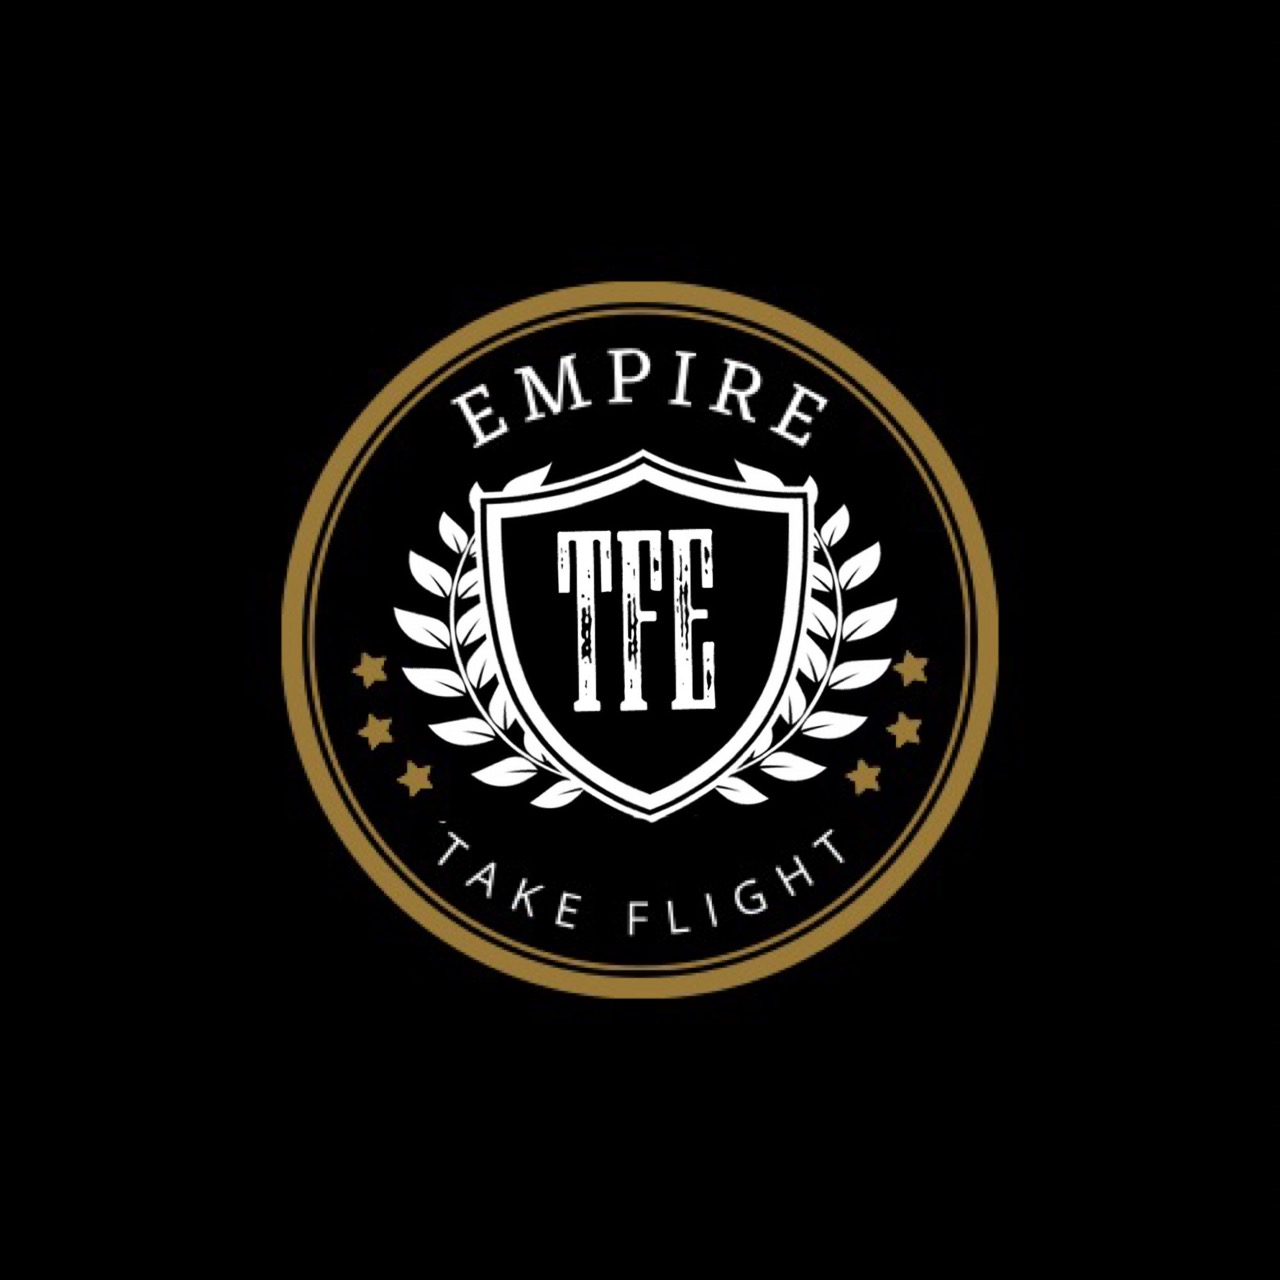 Take Flight Empire Clothing Company